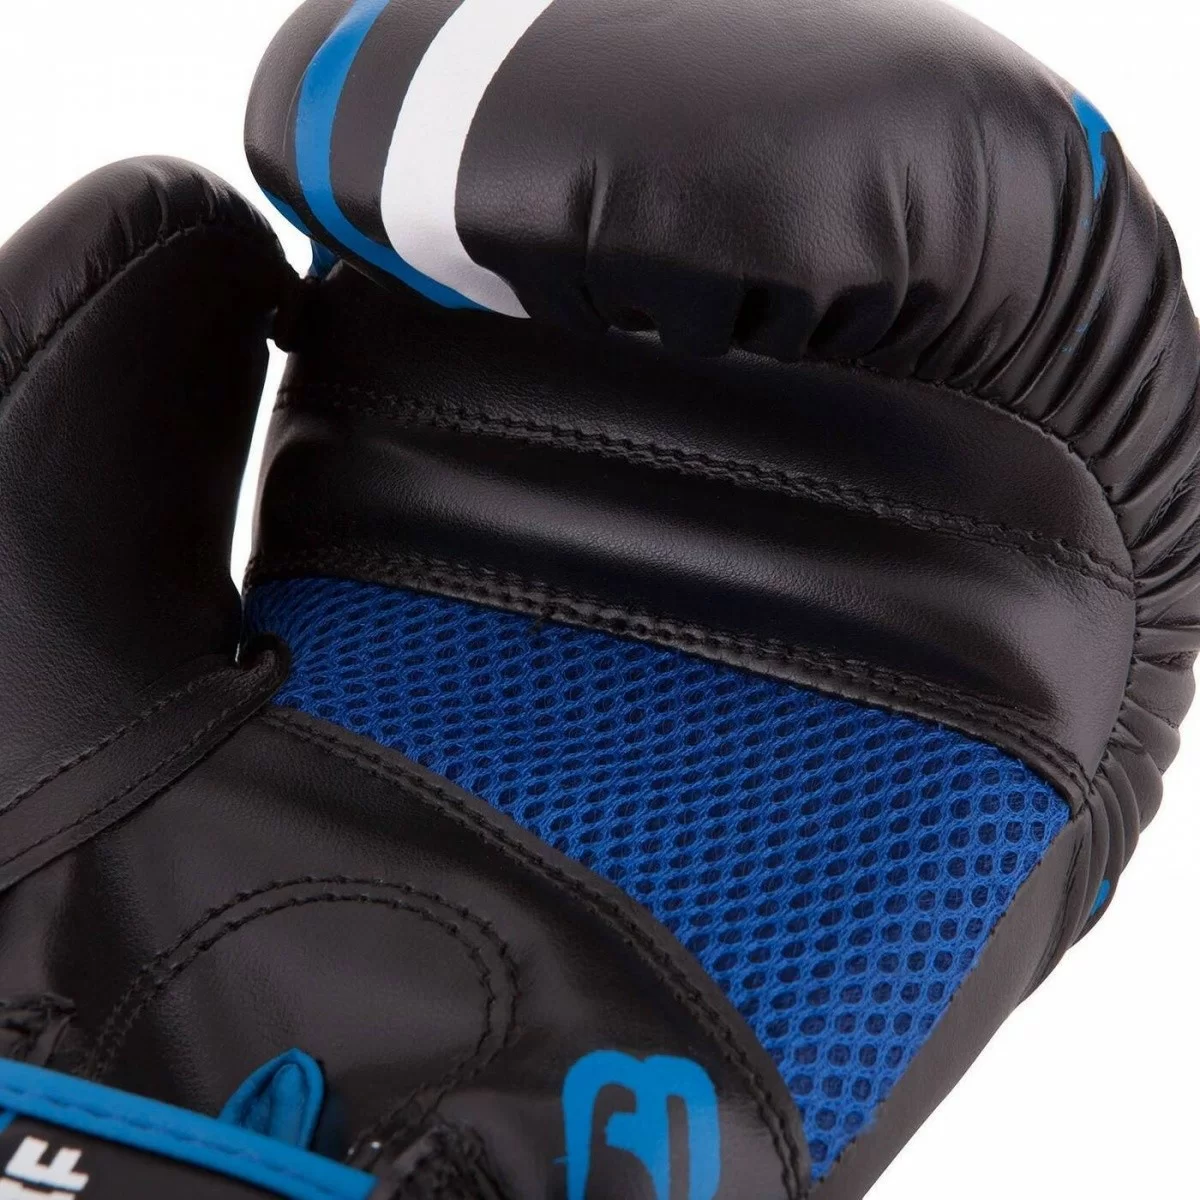 Реальное фото Перчатки боксерские Roomaif RBG-242 Dyex синие от магазина СпортСЕ